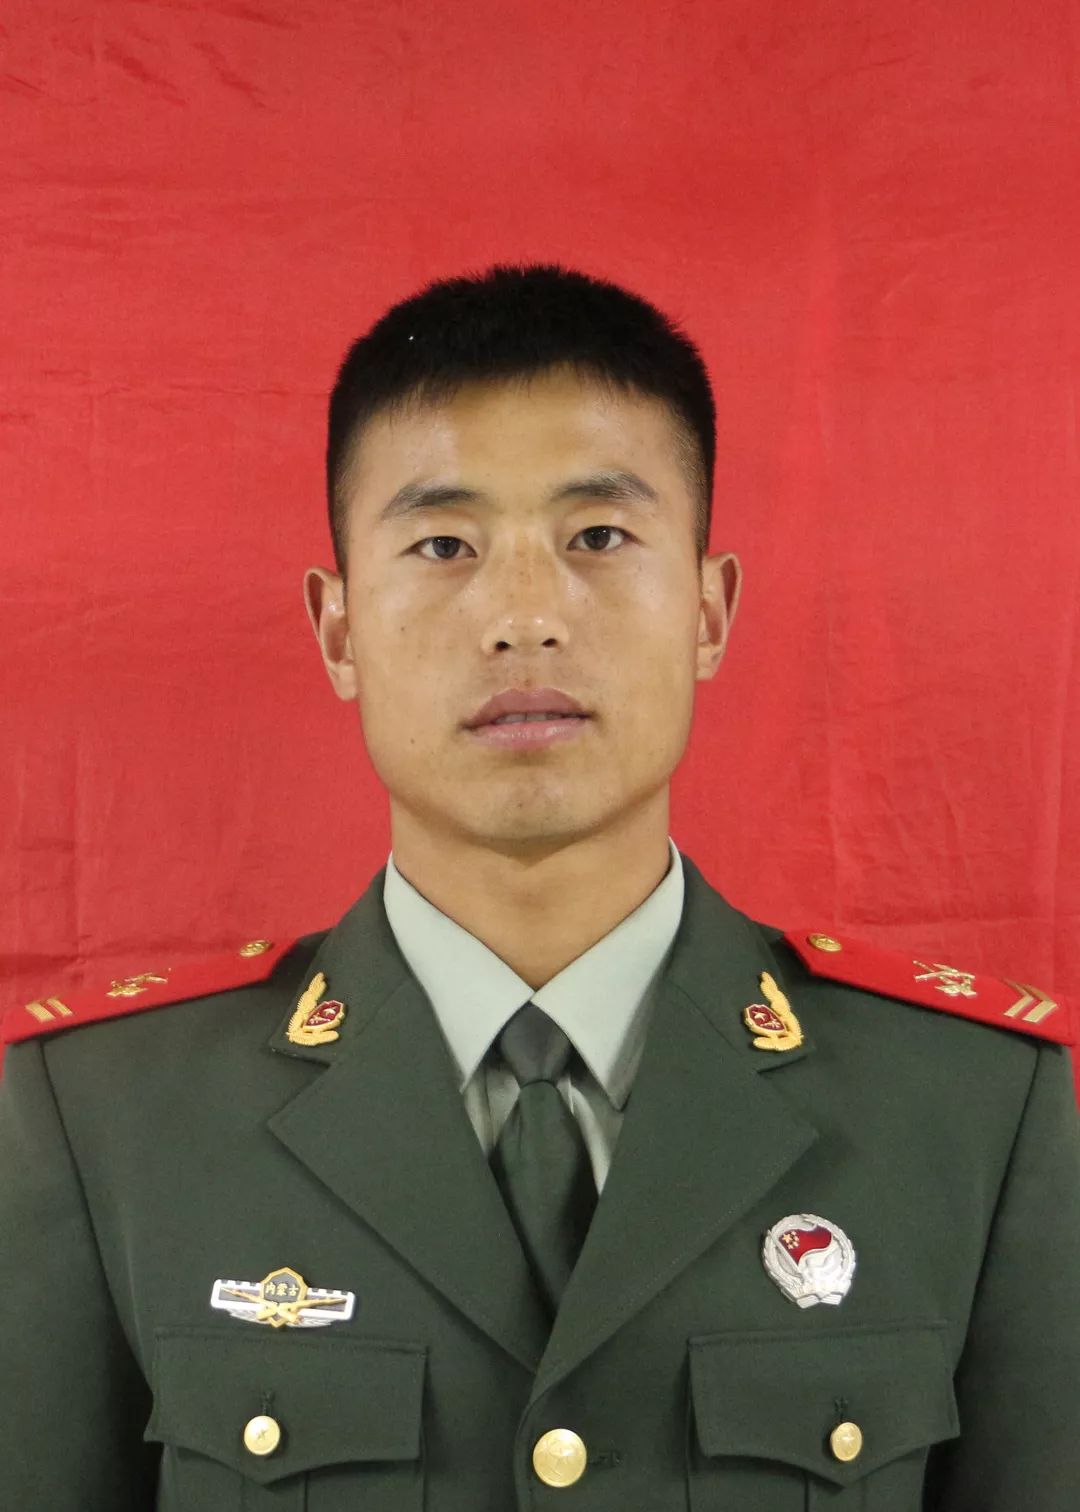 韩玄玄,男,汉族 1991年12月生,中共党员,武警内蒙古总队机动支队特战